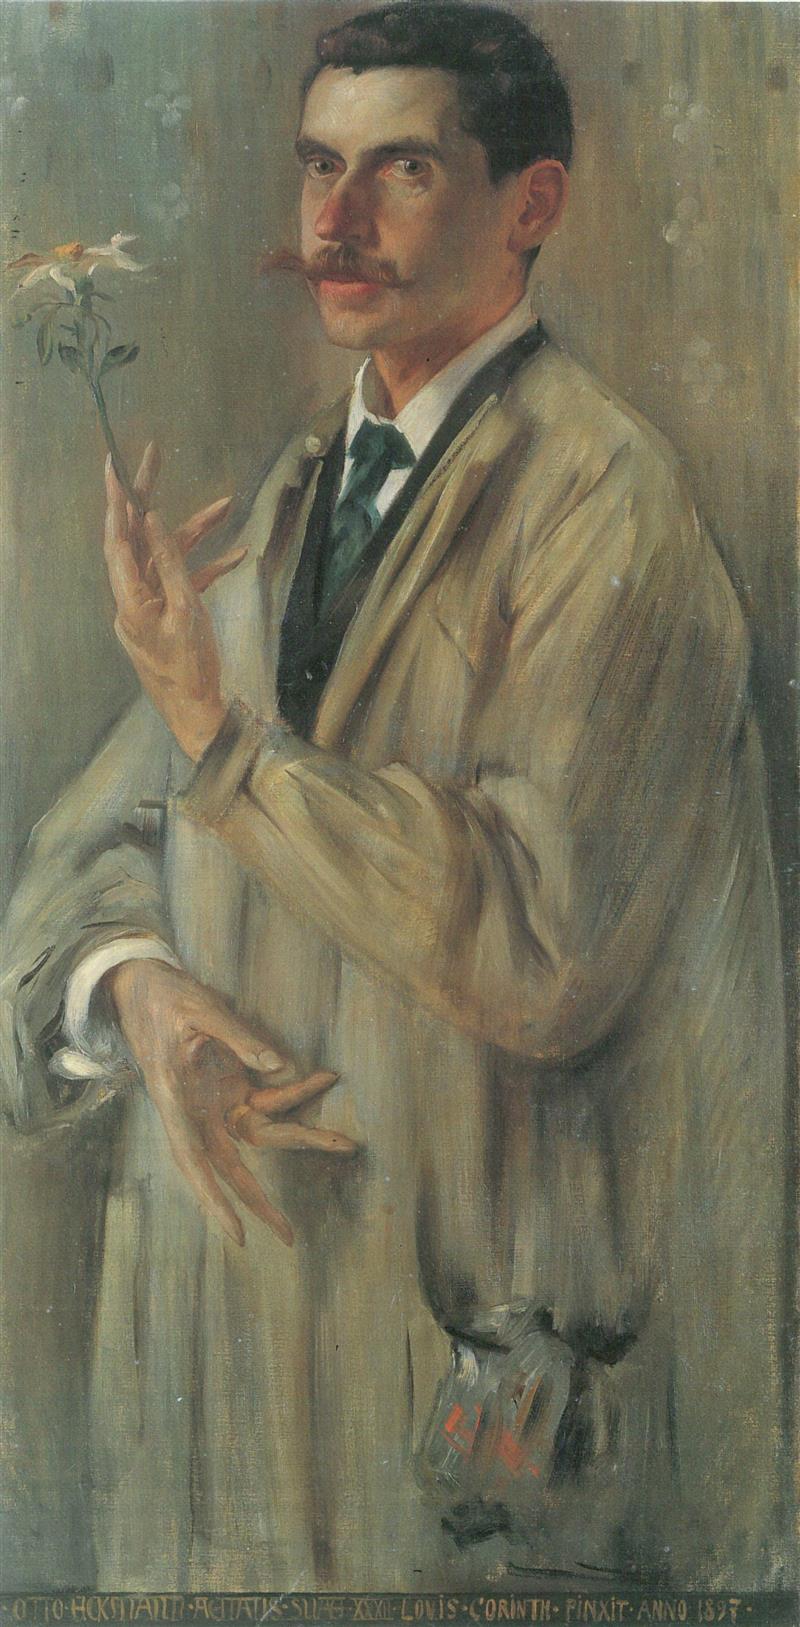 Portrait of the Painter Otto Eckmann